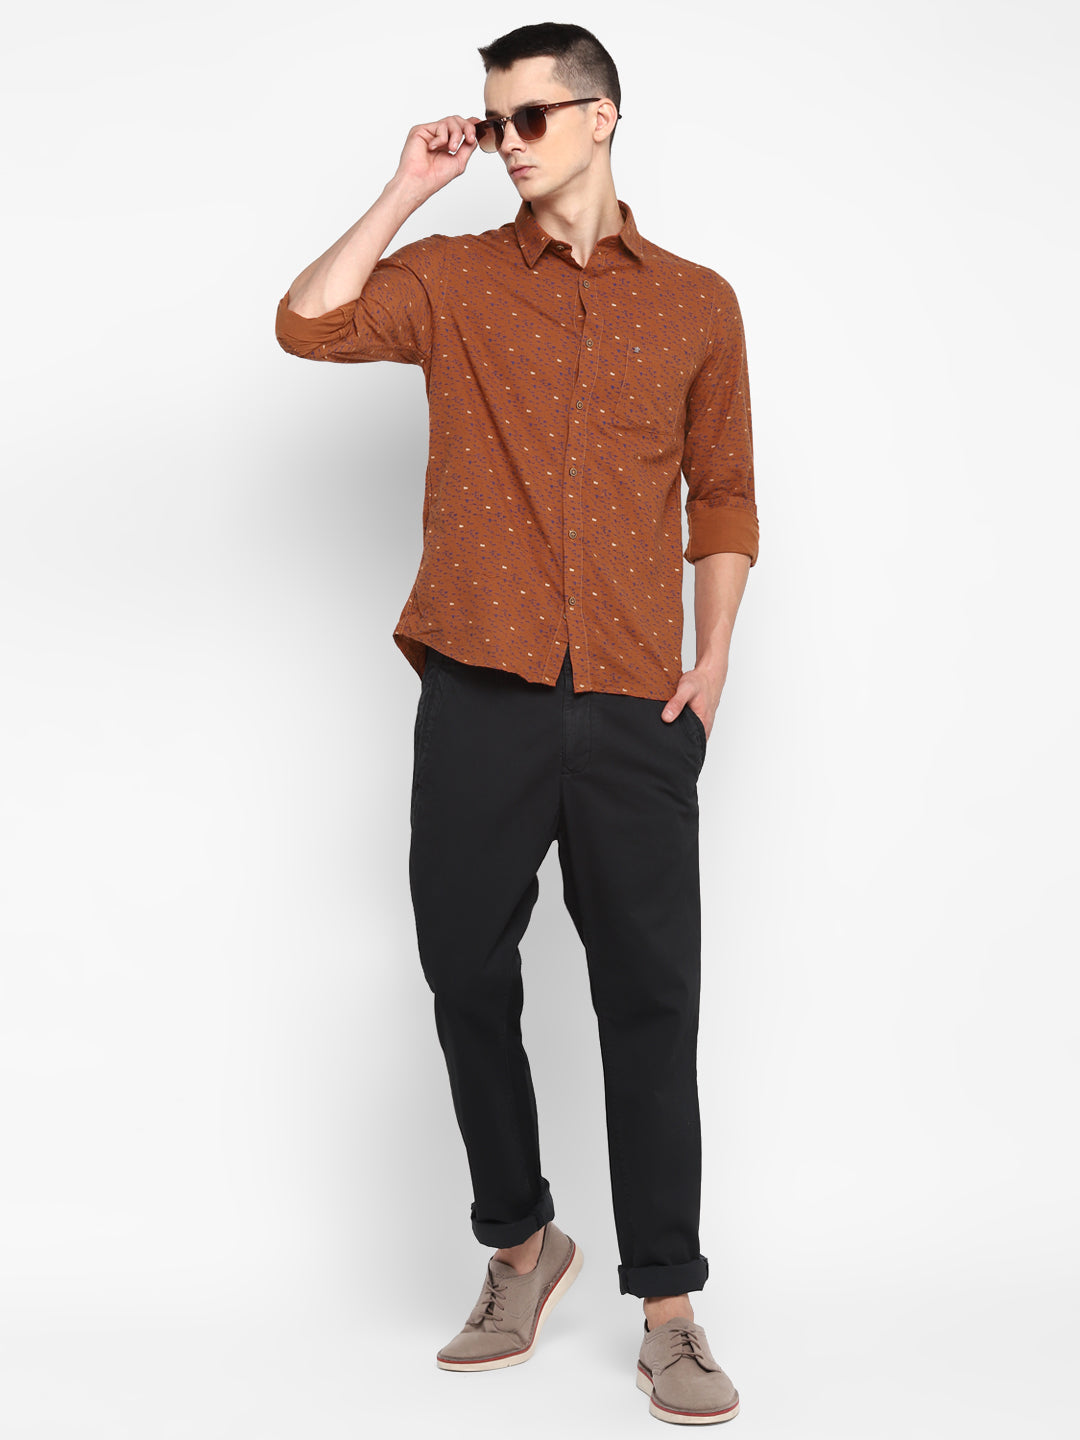 Printed Brown Slim Fit Causal Shirt